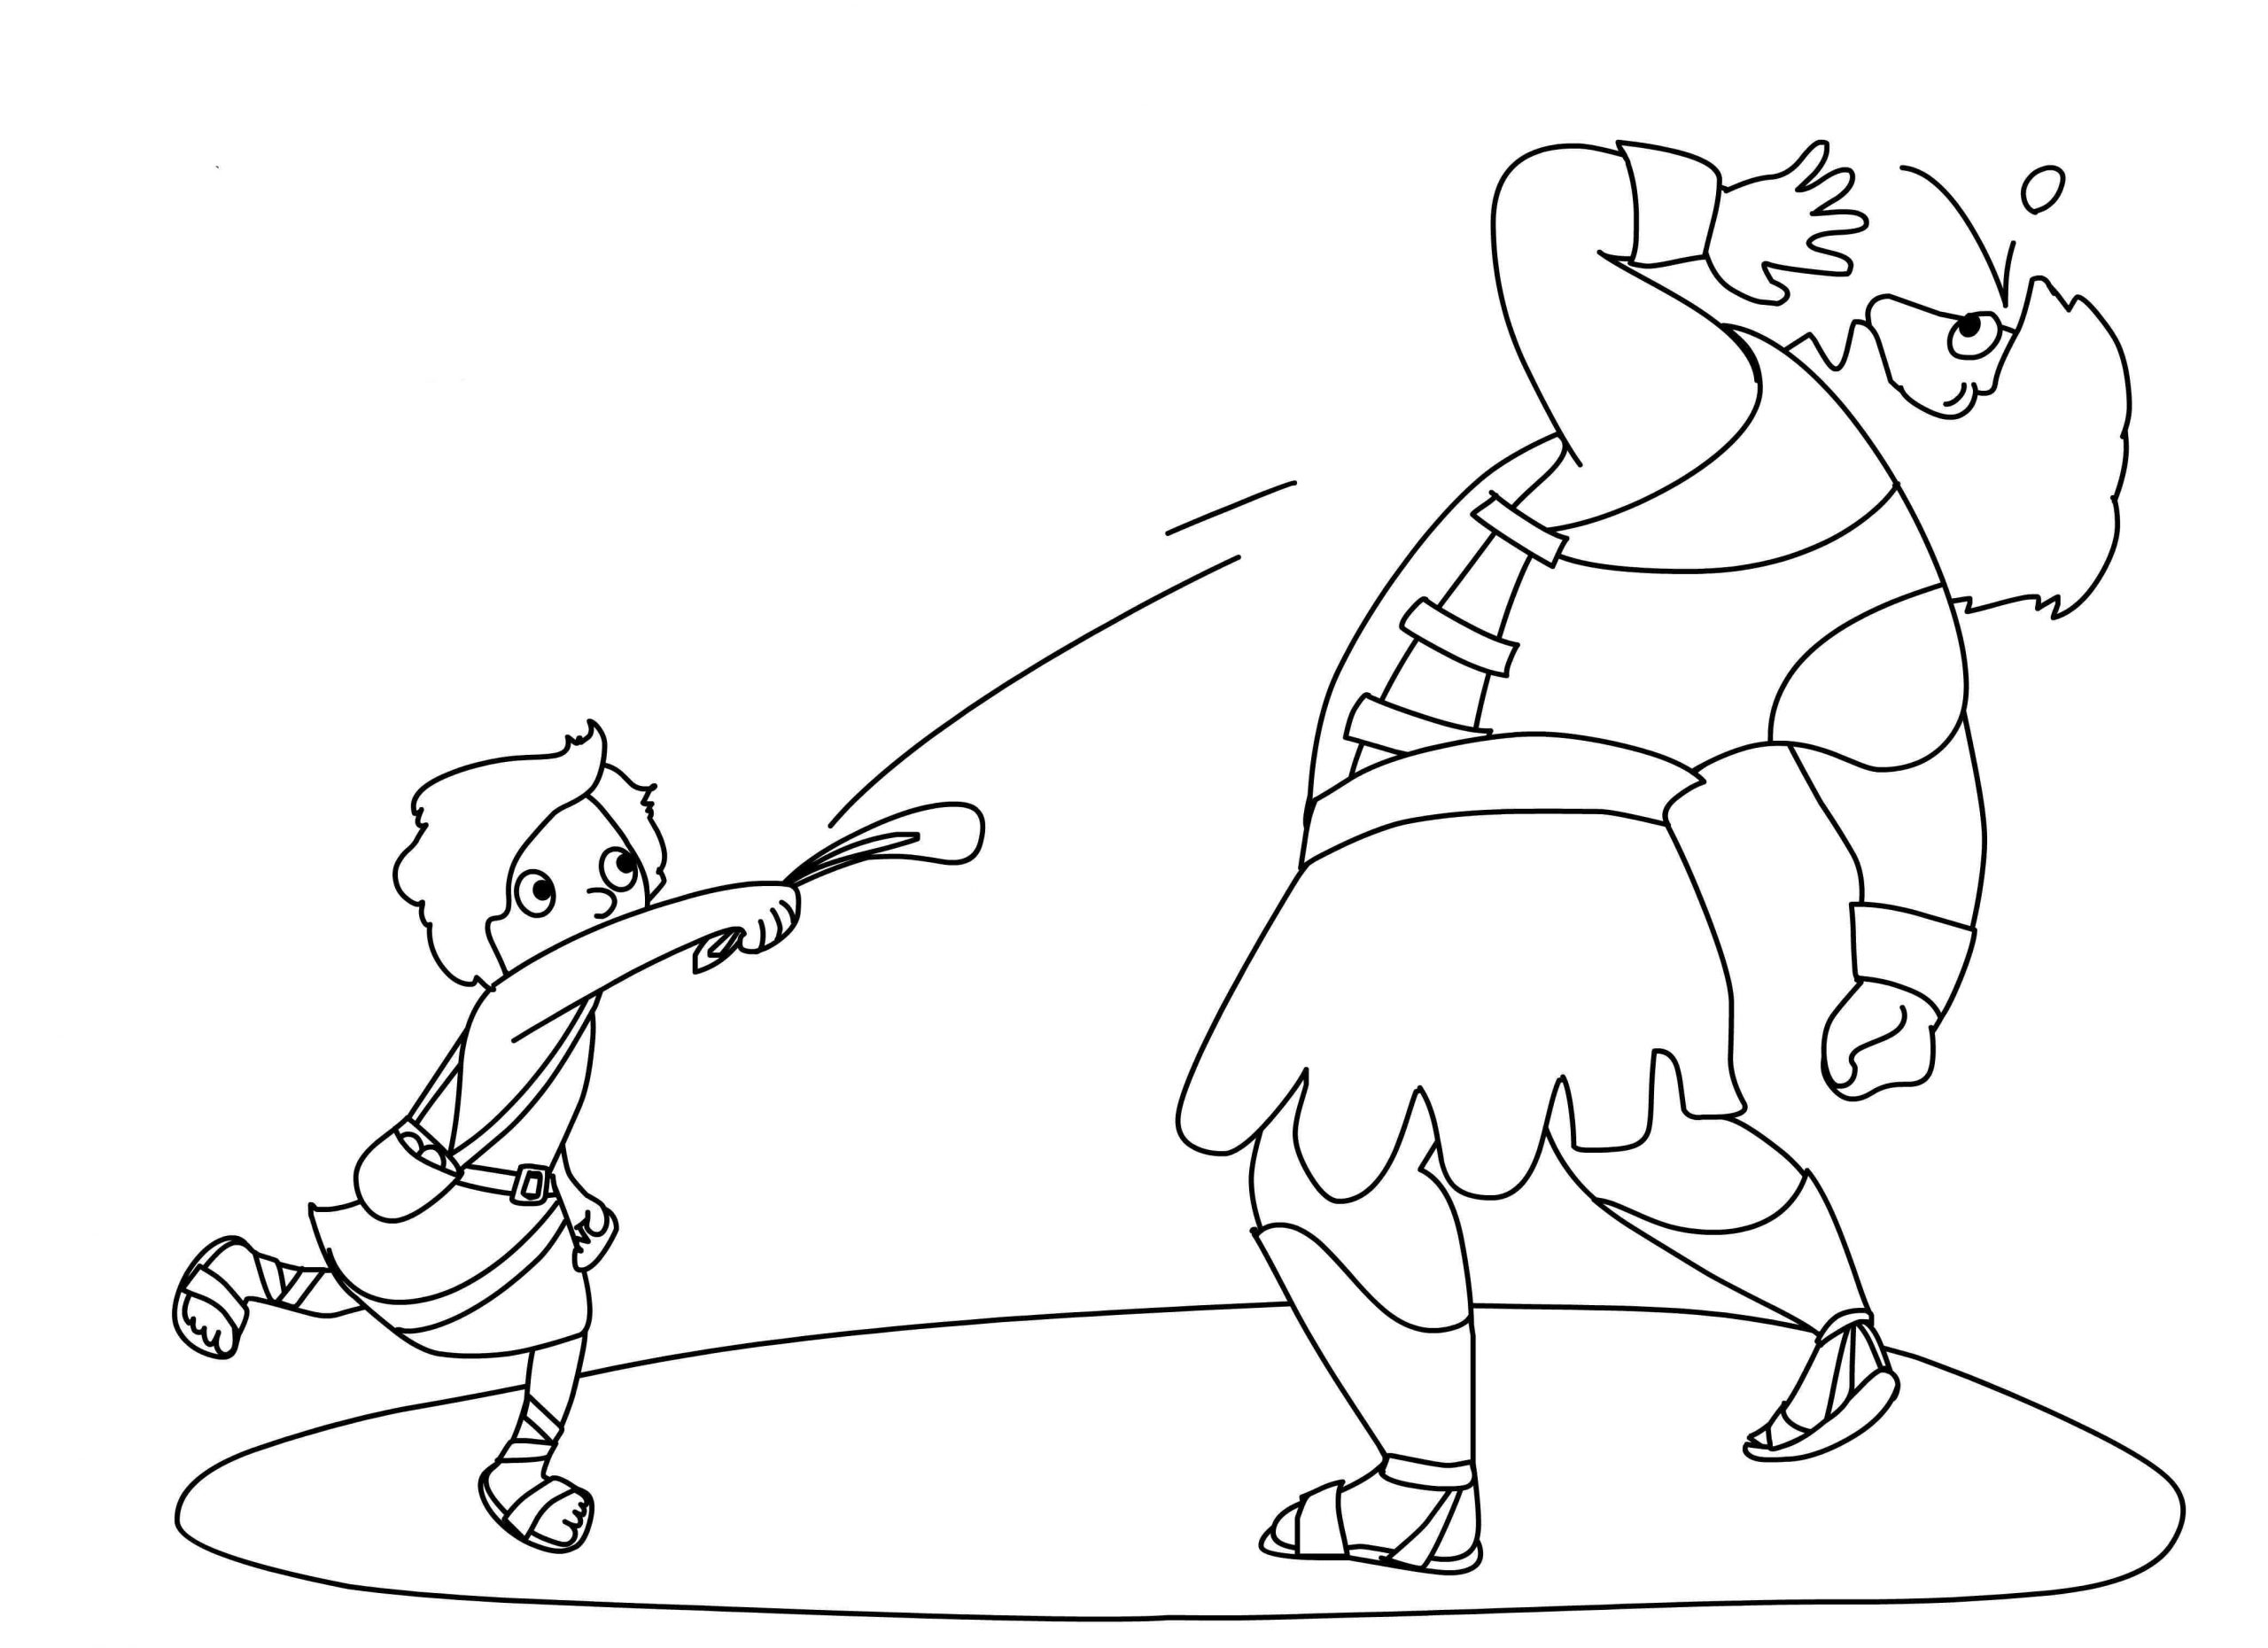 Imagem grátis de Davi e Golias para colorir